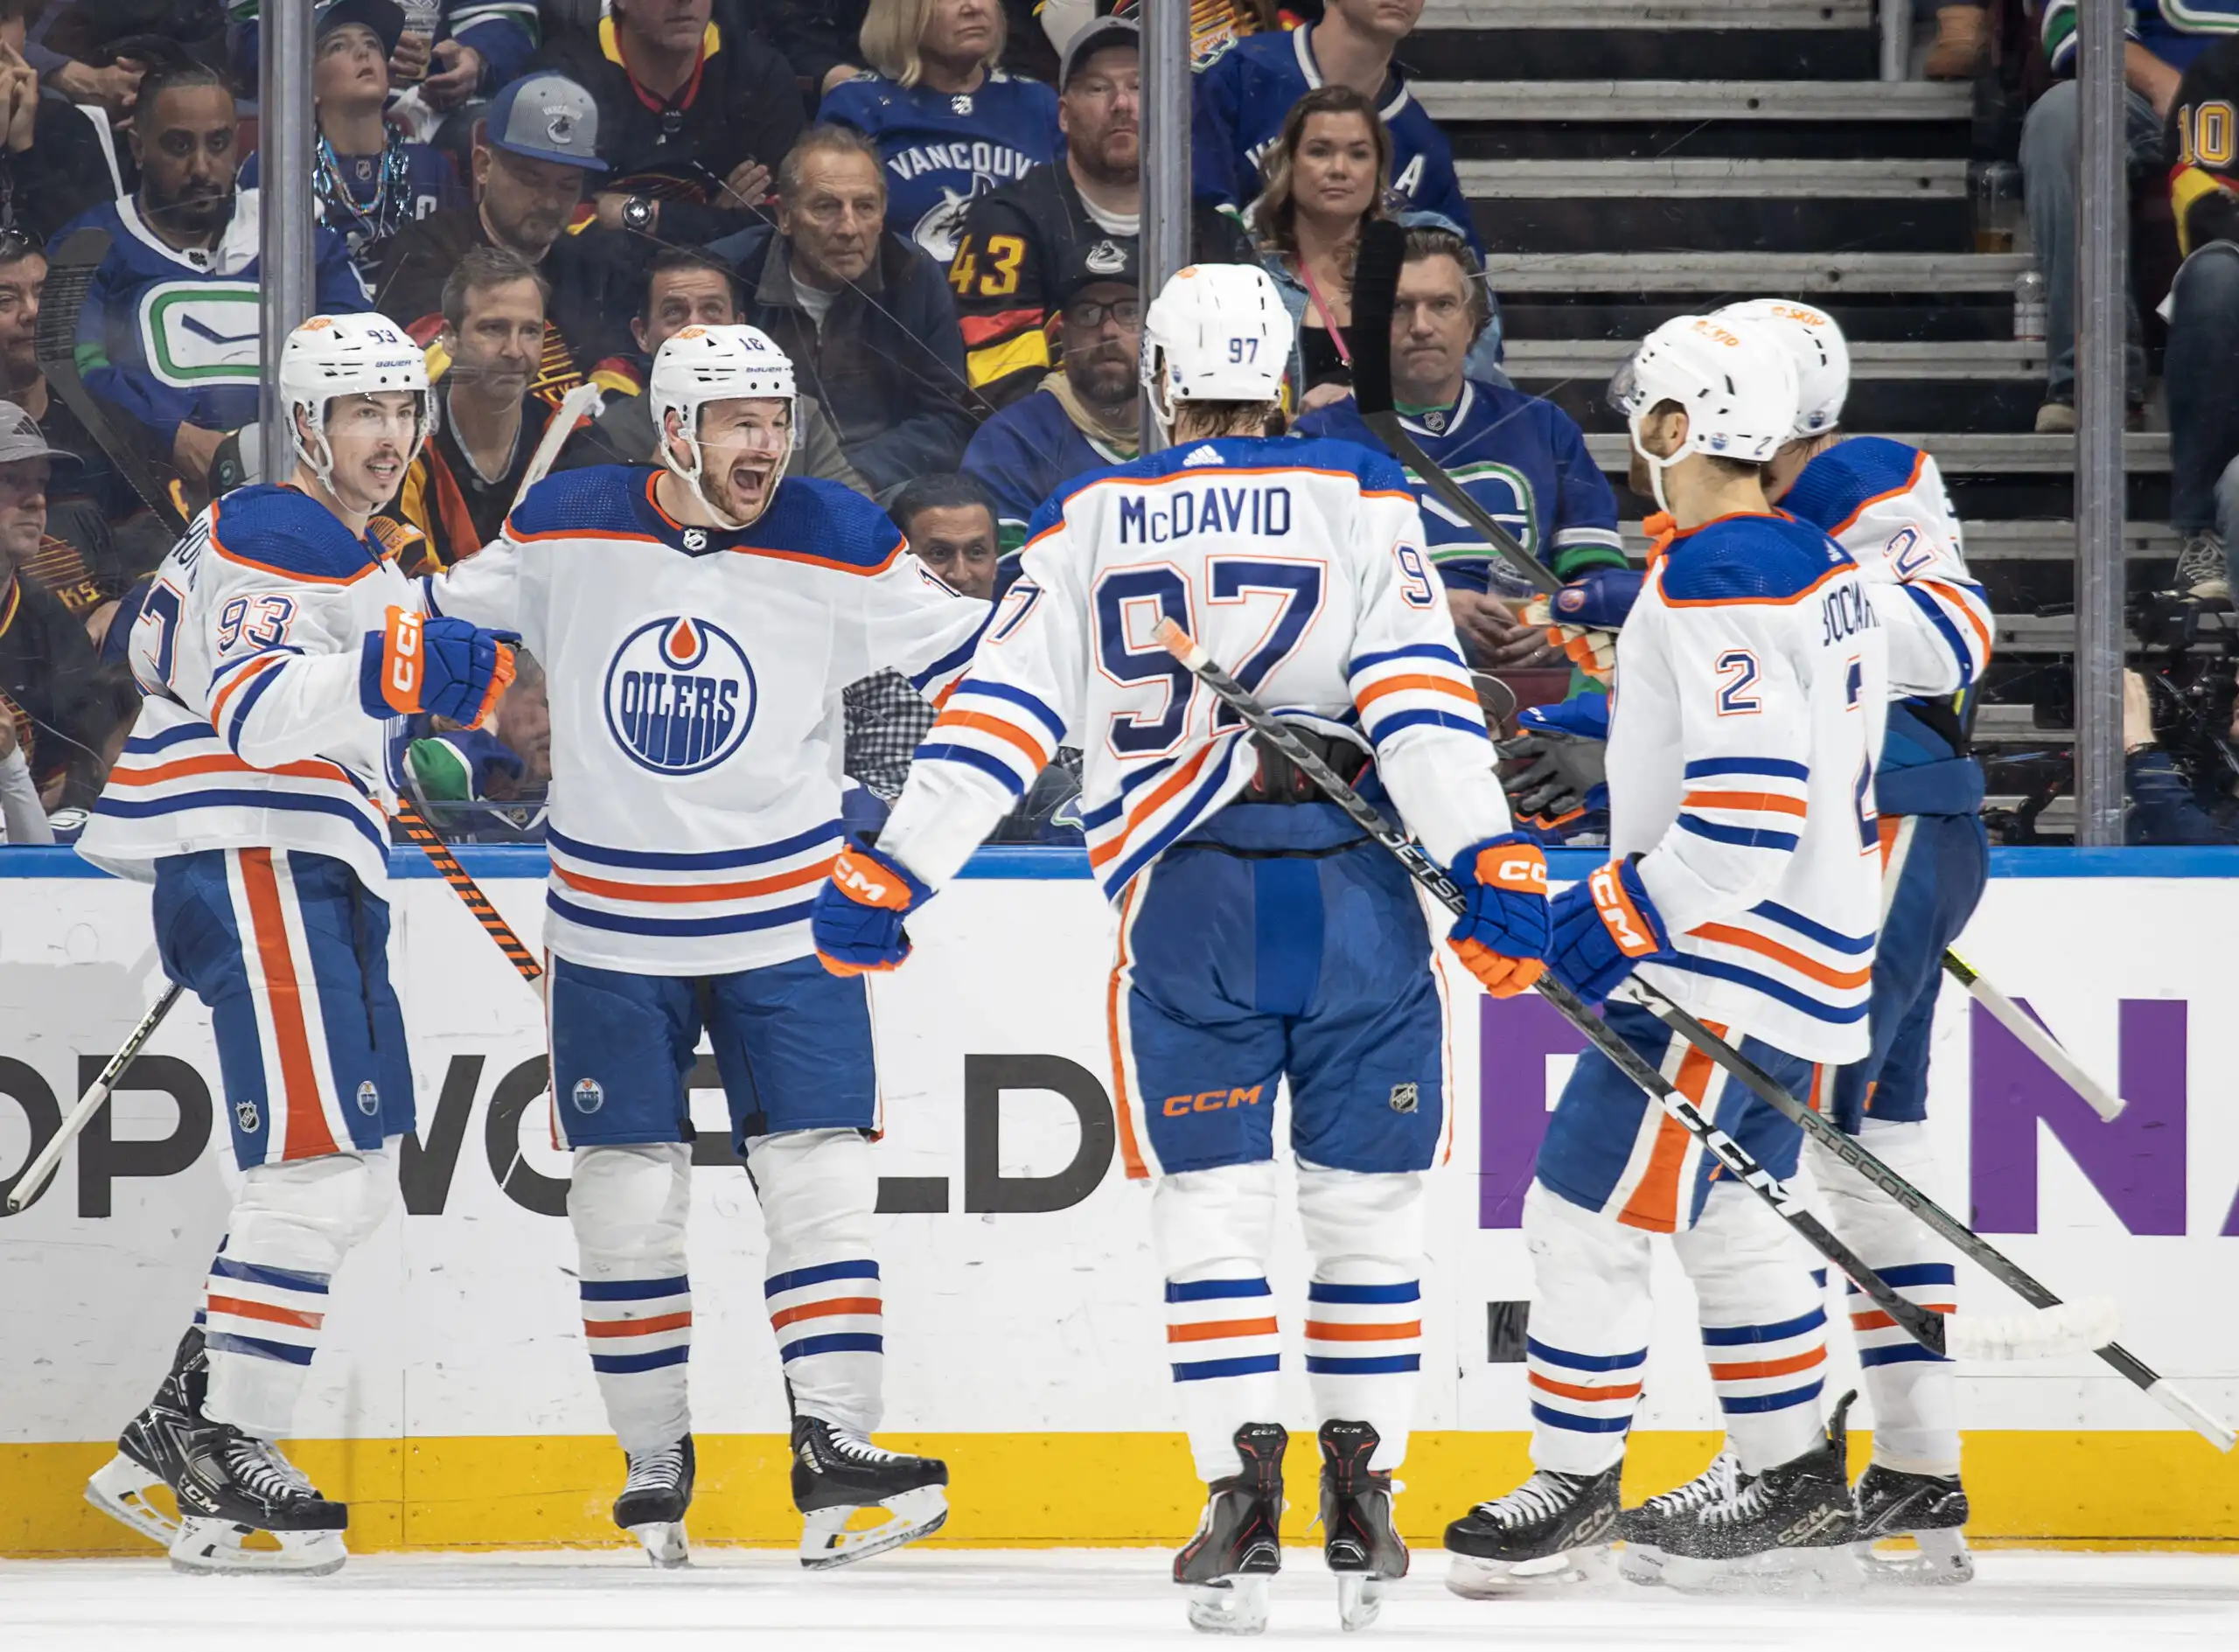 Canucks Oilers Series Exceeded Hype Hockey Writers Edmonton Oilers News Analysis